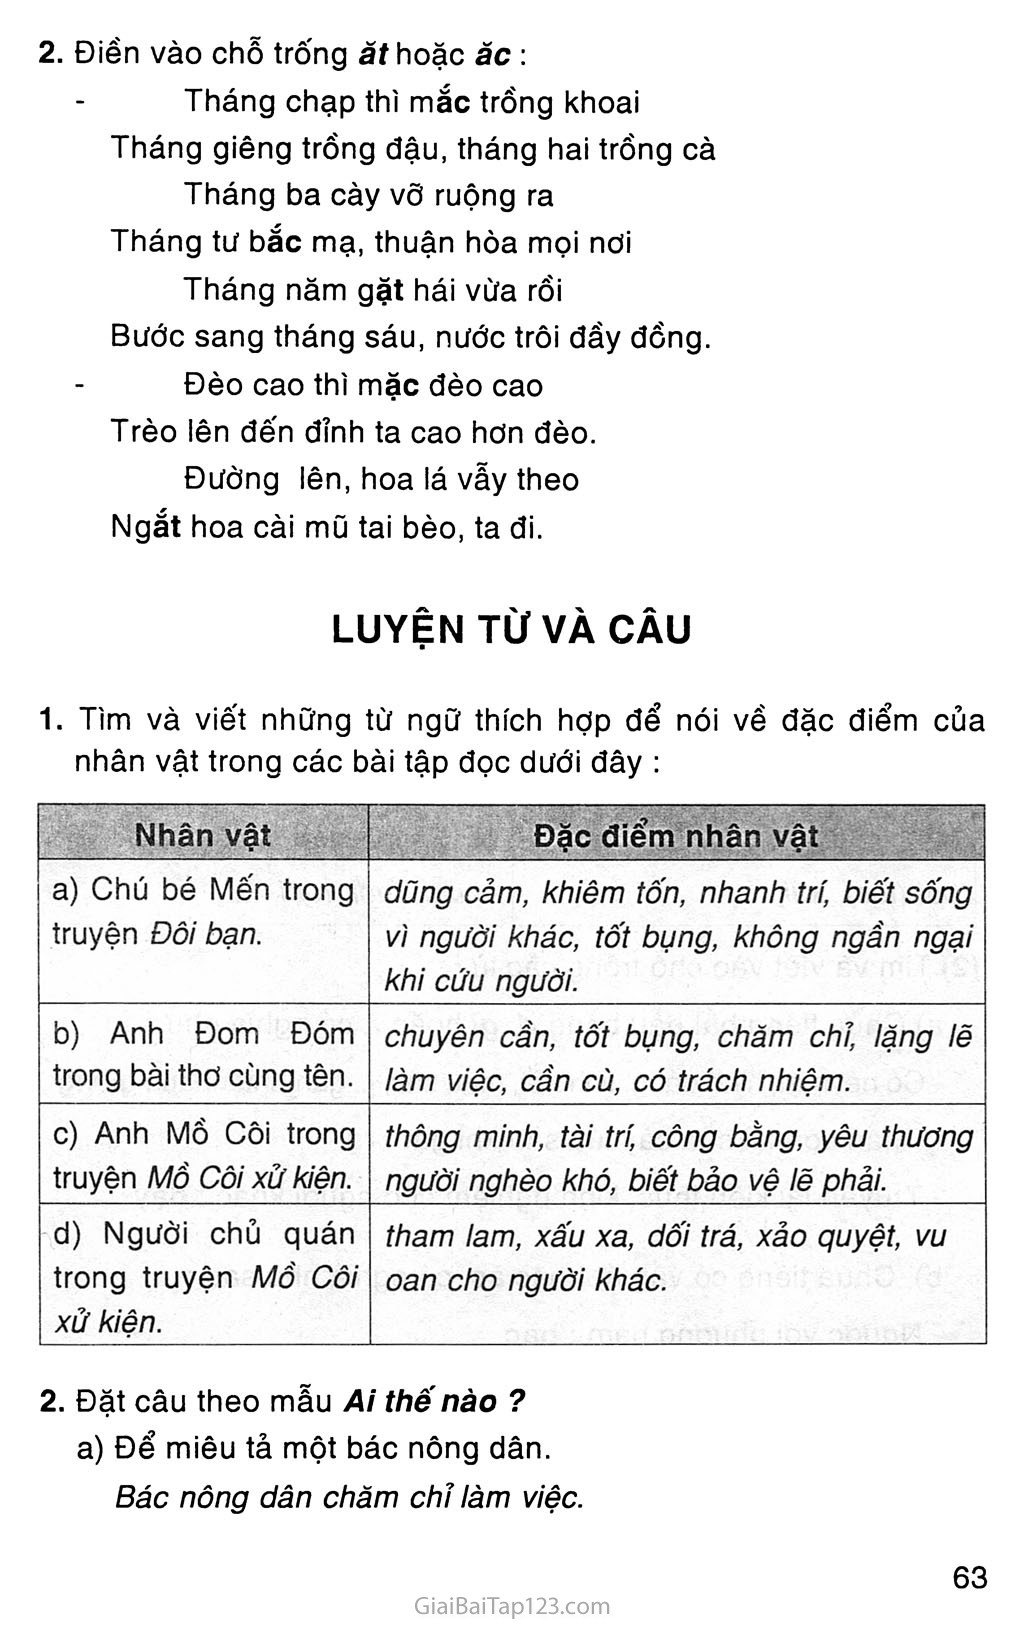 Giải vở bài tập Tiếng Việt lớp 3 tập 1 Tuần 17